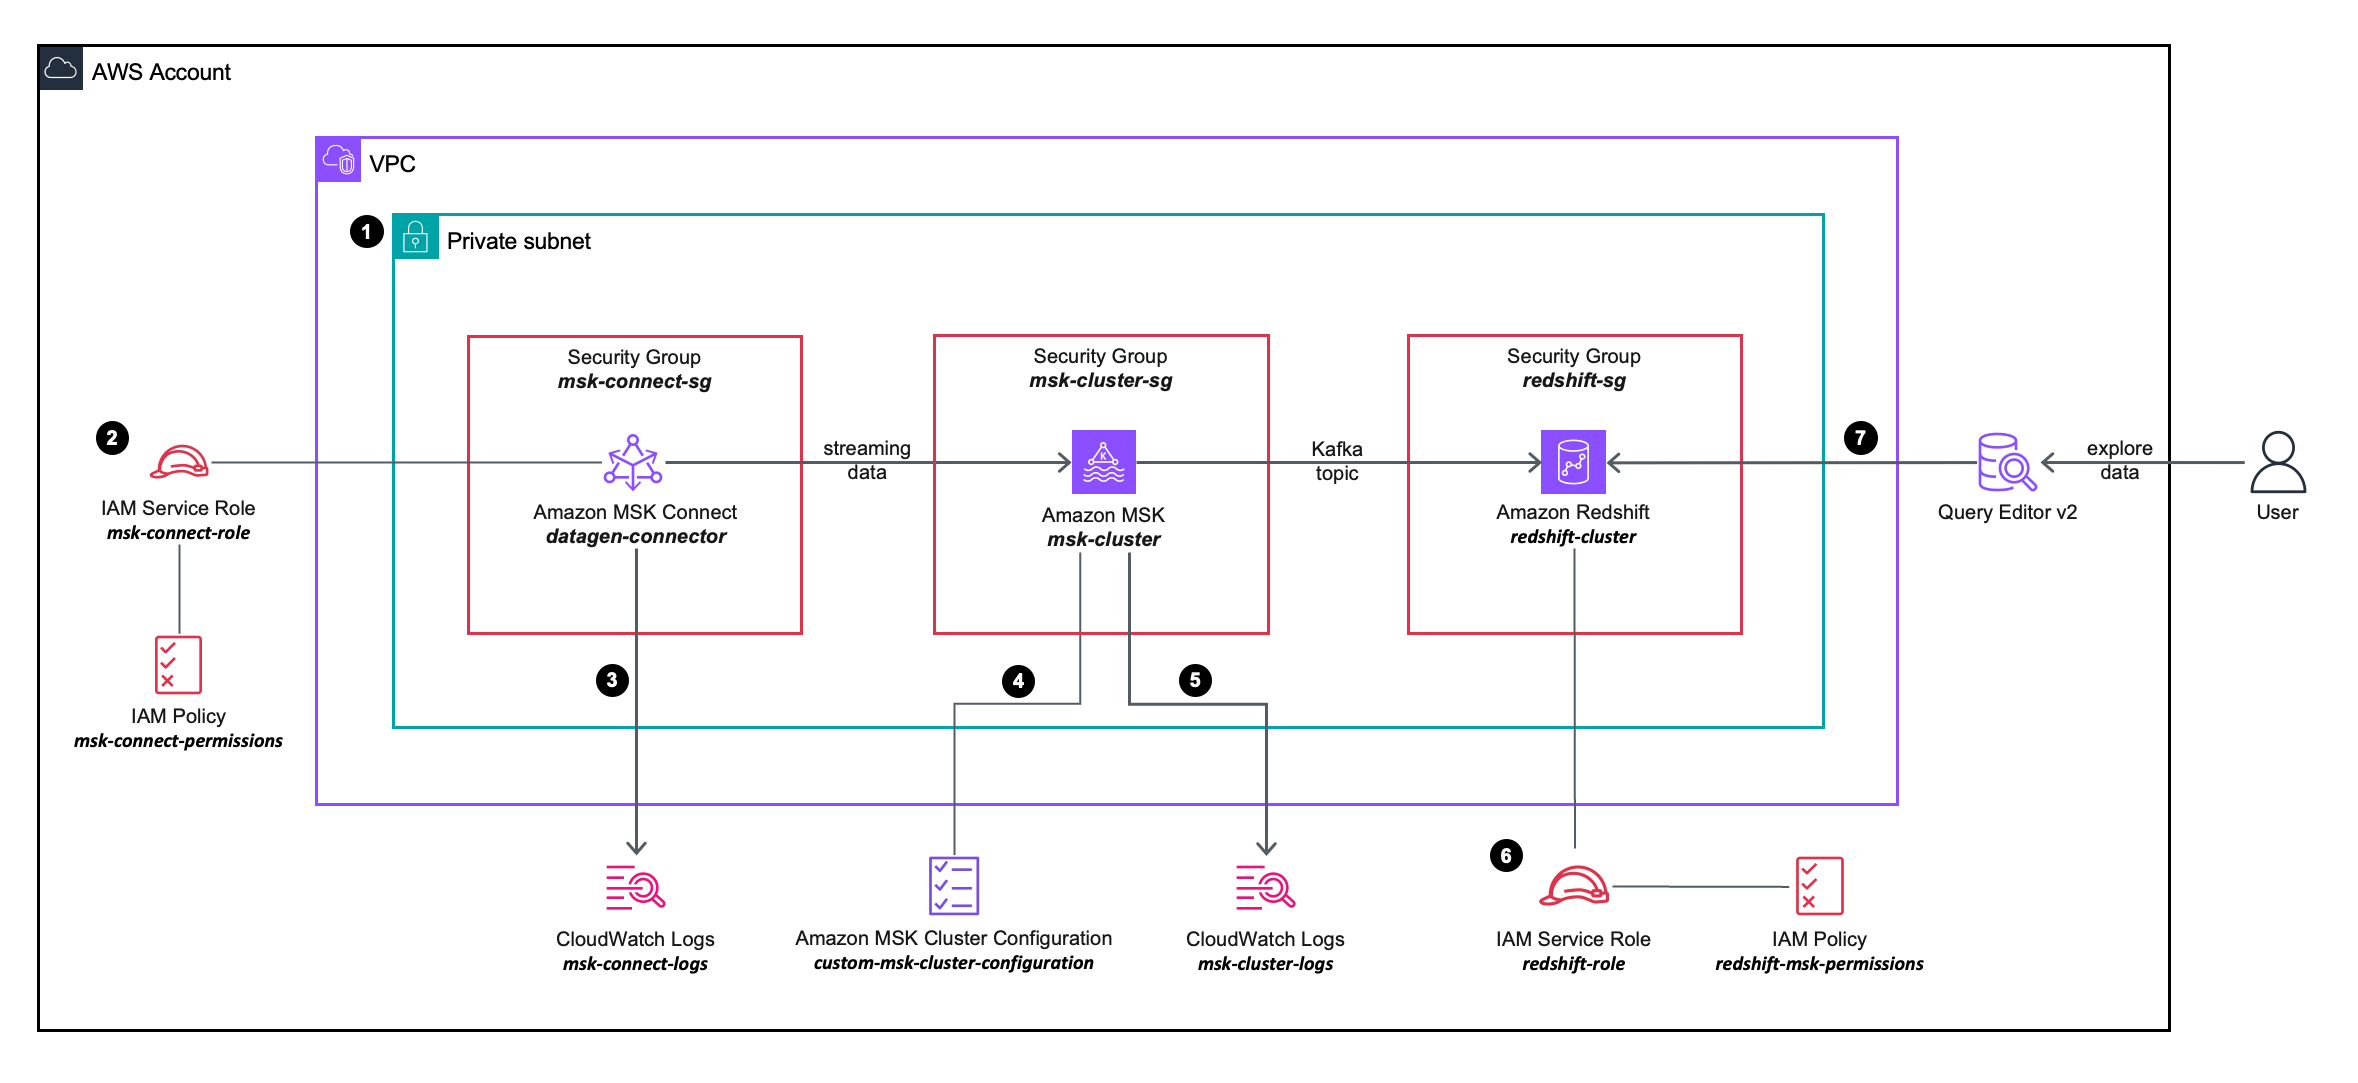 diagramme d'architecture de solution décrivant plus en détail la configuration et l'intégration des services AWS que vous utiliserez